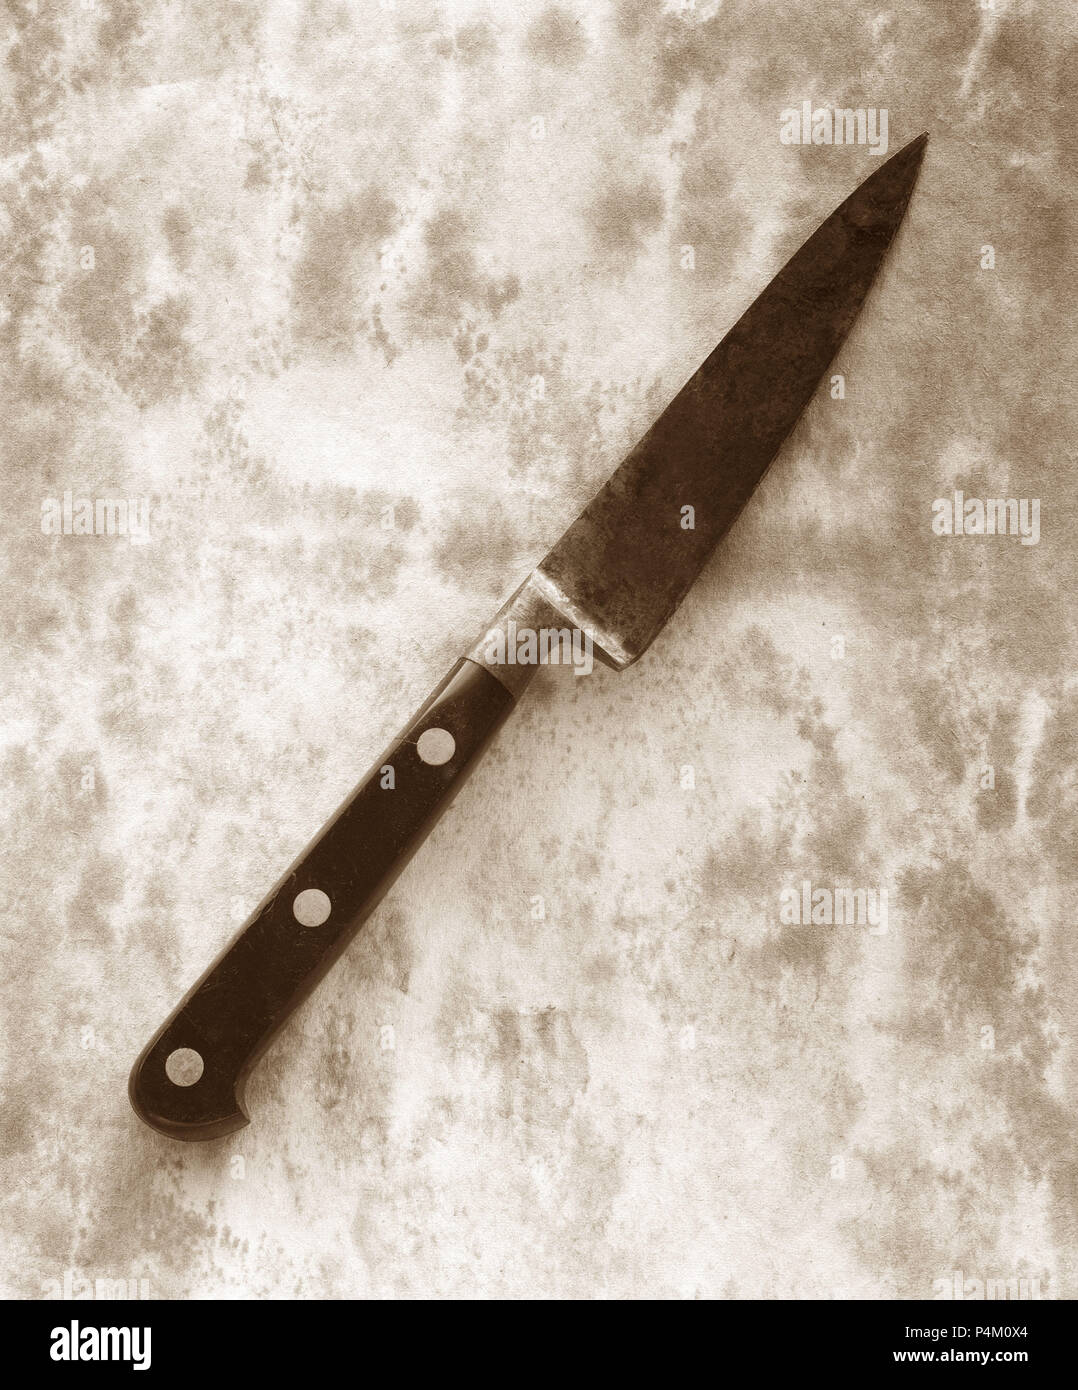 Ancien couteau de cuisine sur vieux papier Photo Stock - Alamy